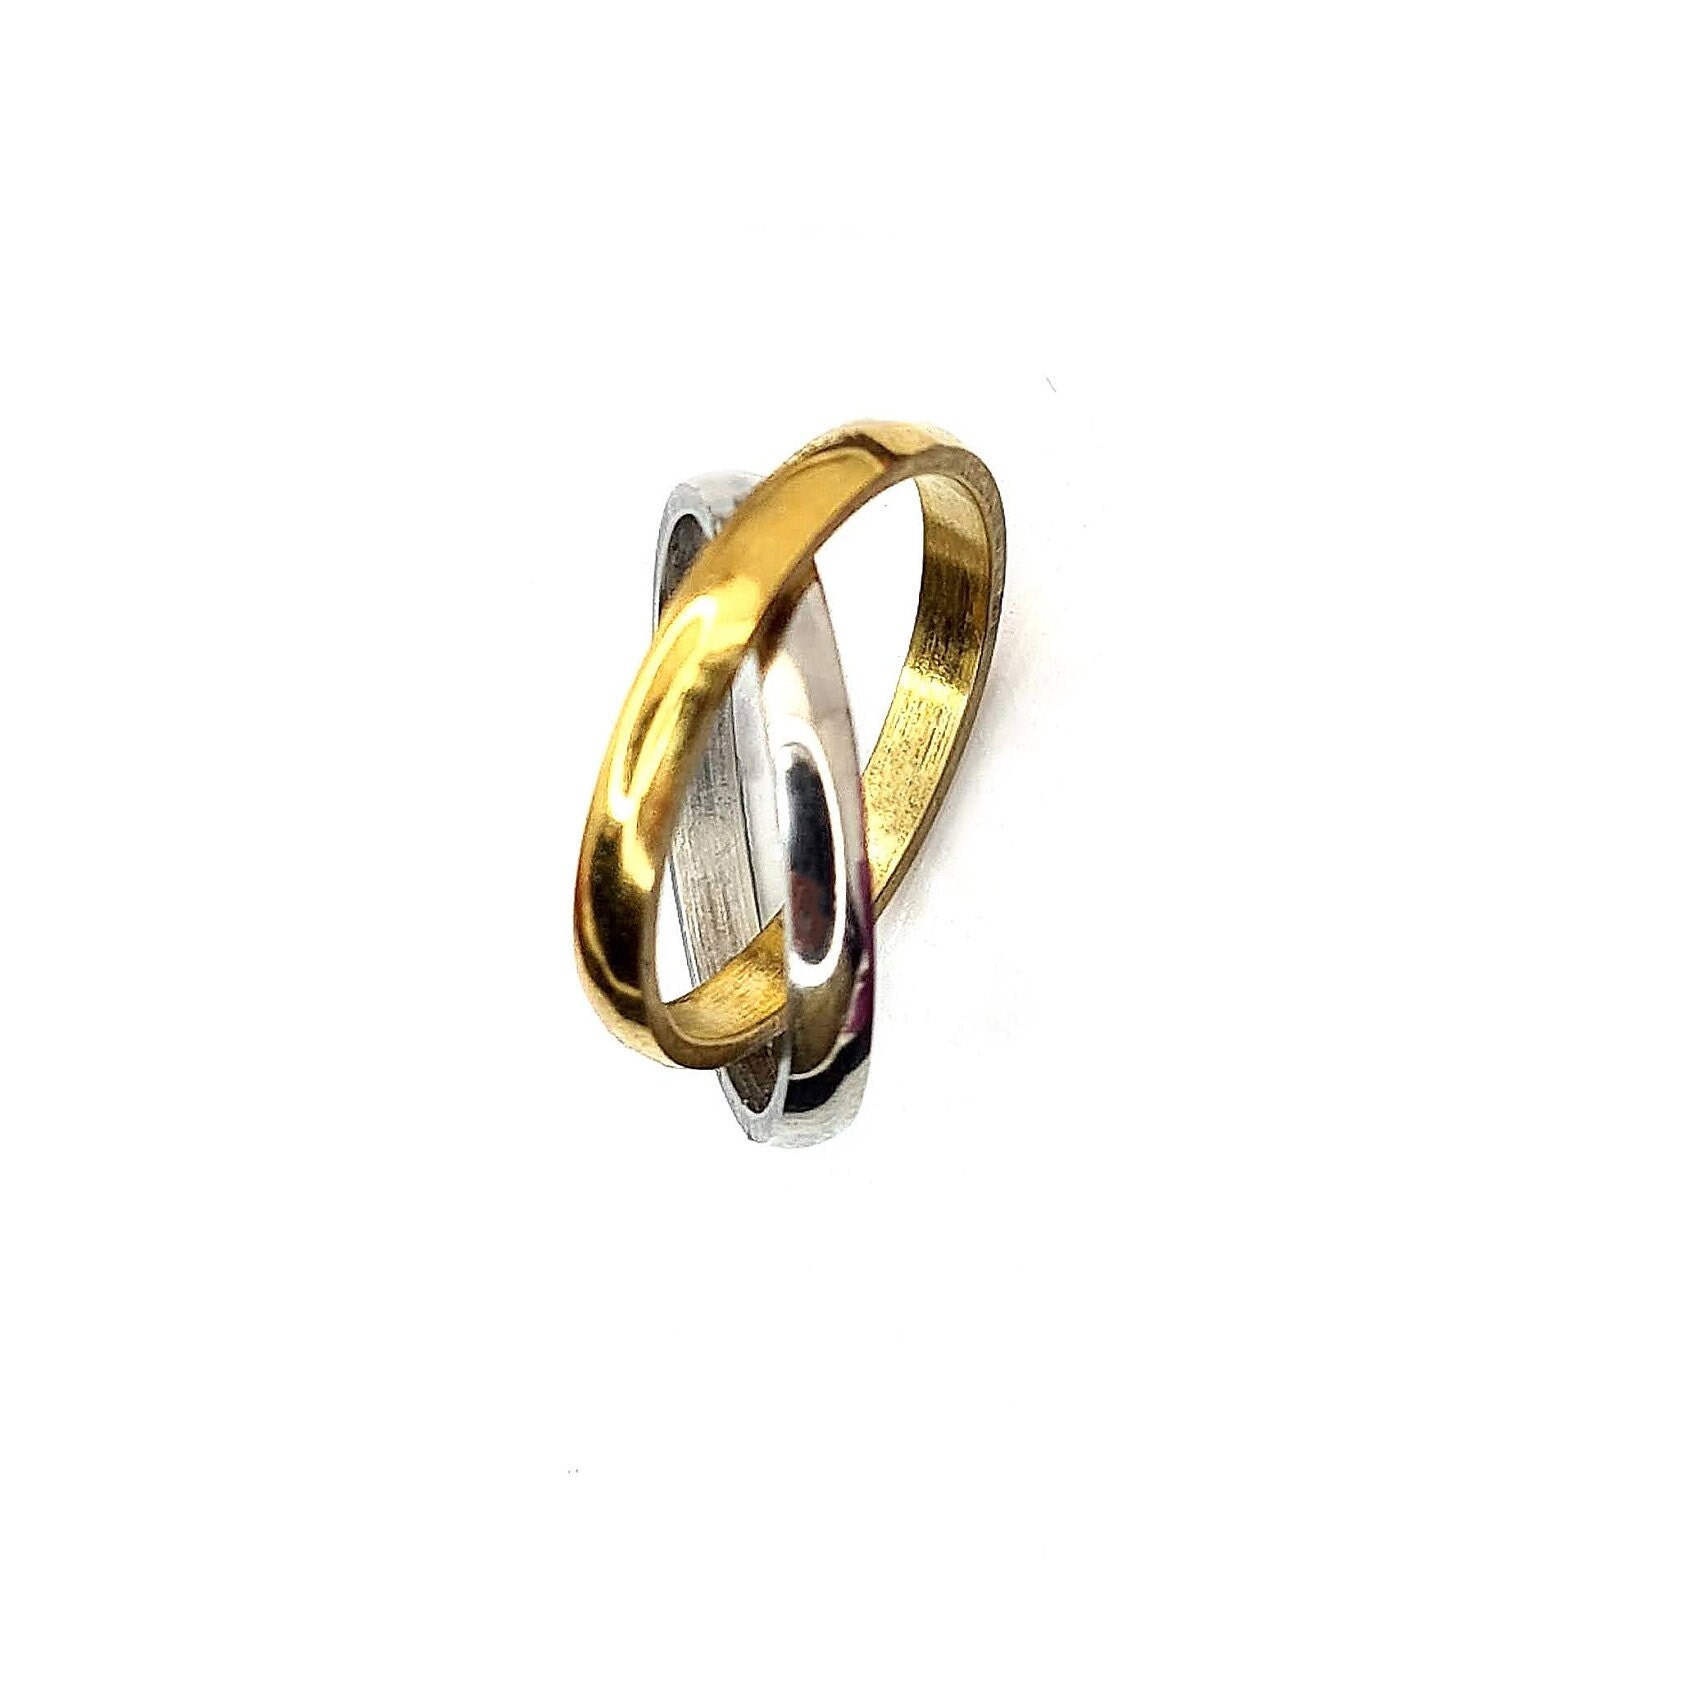 Louis Vuitton Empreinte Ring, White Gold and Diamonds Grey. Size 54